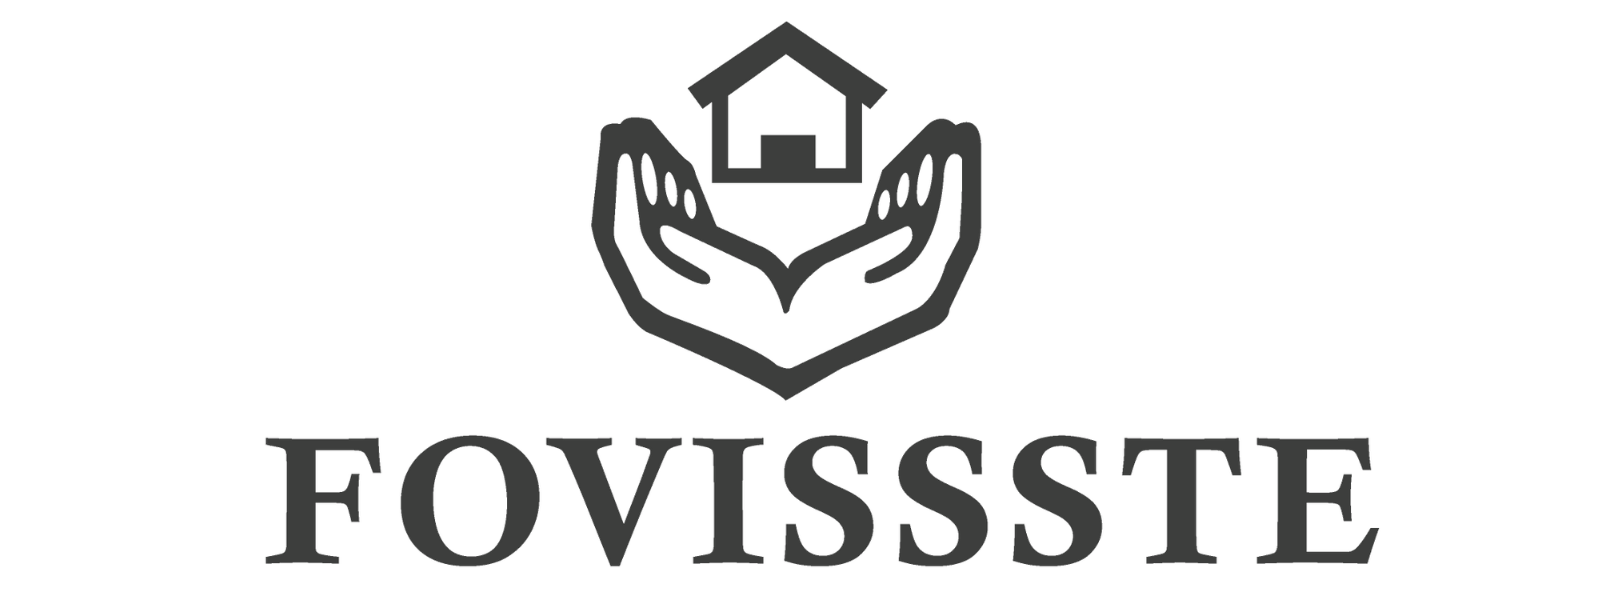 Logo FOVISSSTE